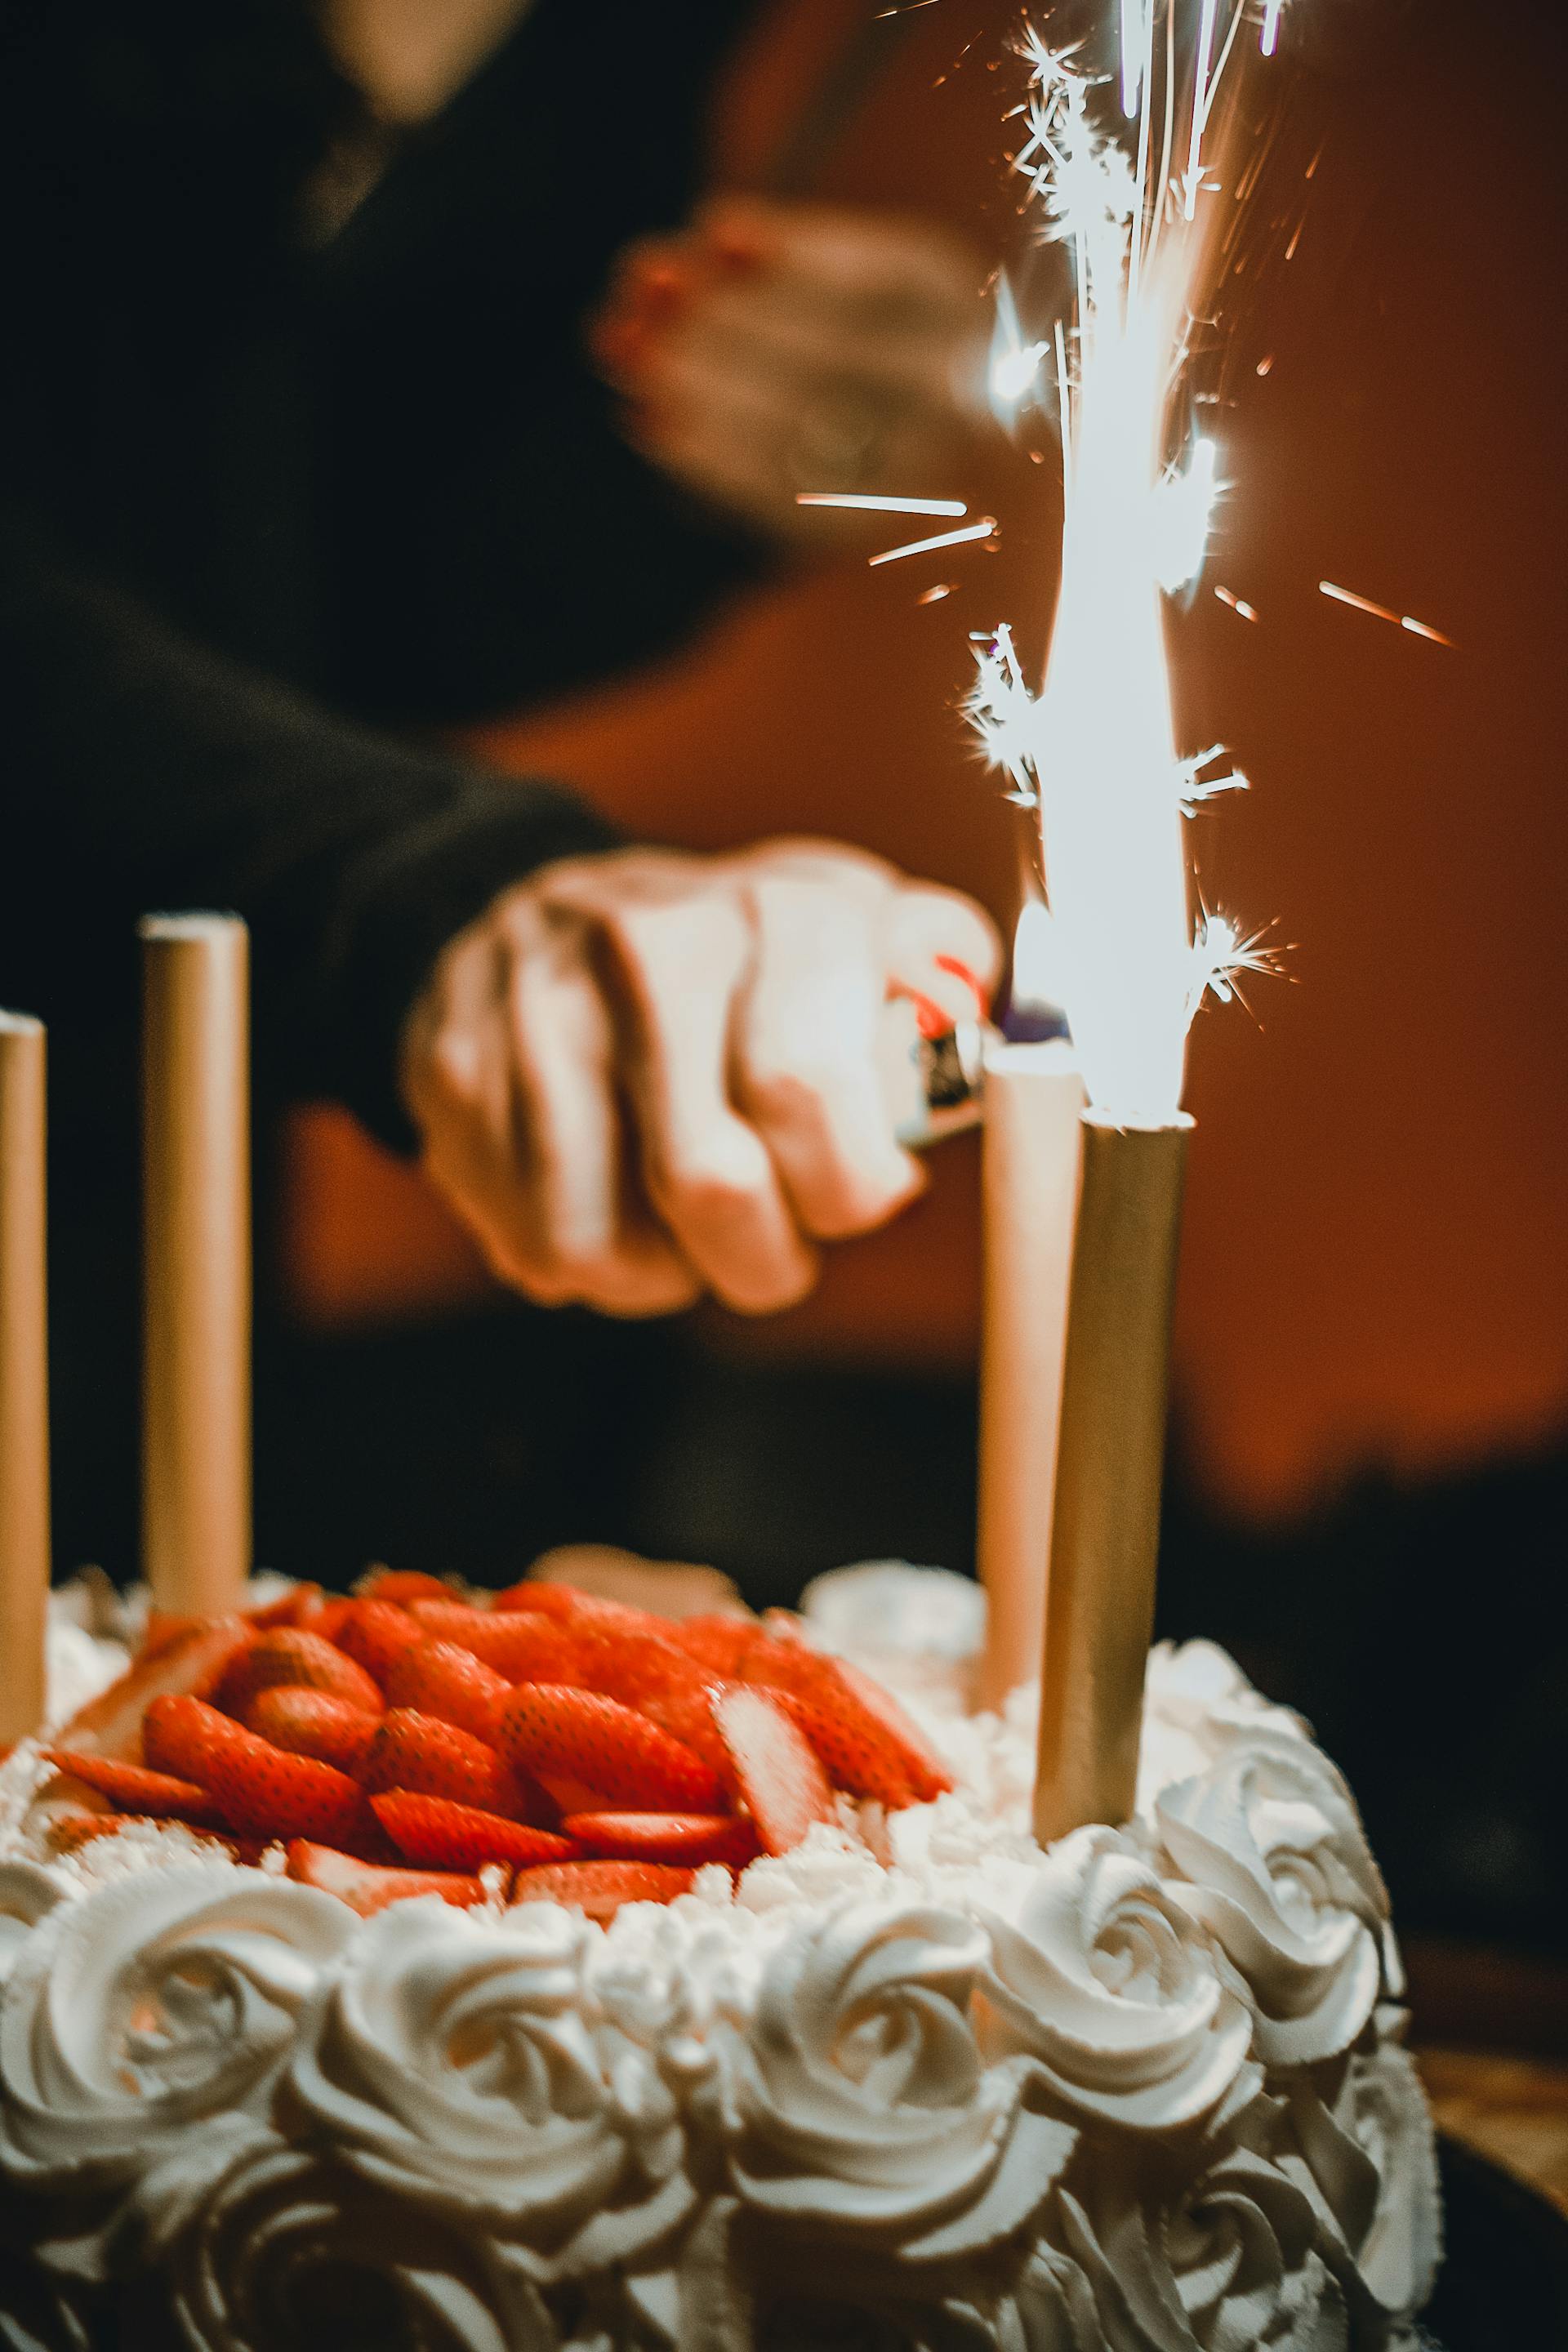 Une personne allumant les cierges magiques sur un gâteau | Source : Pexels